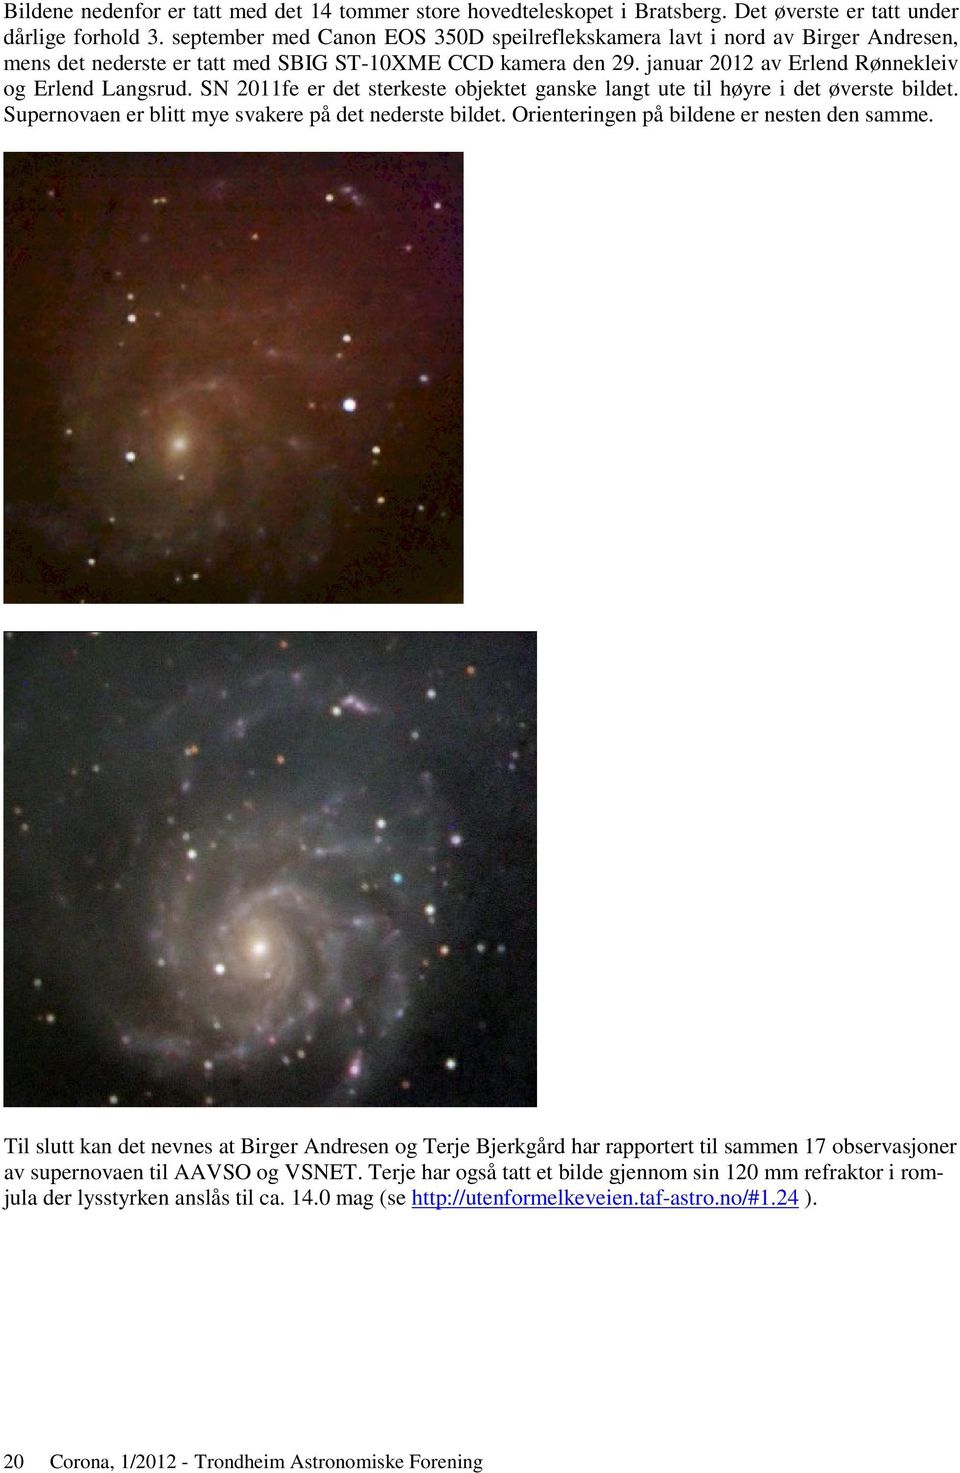 SN 2011fe er det sterkeste objektet ganske langt ute til høyre i det øverste bildet. Supernovaen er blitt mye svakere på det nederste bildet. Orienteringen på bildene er nesten den samme.